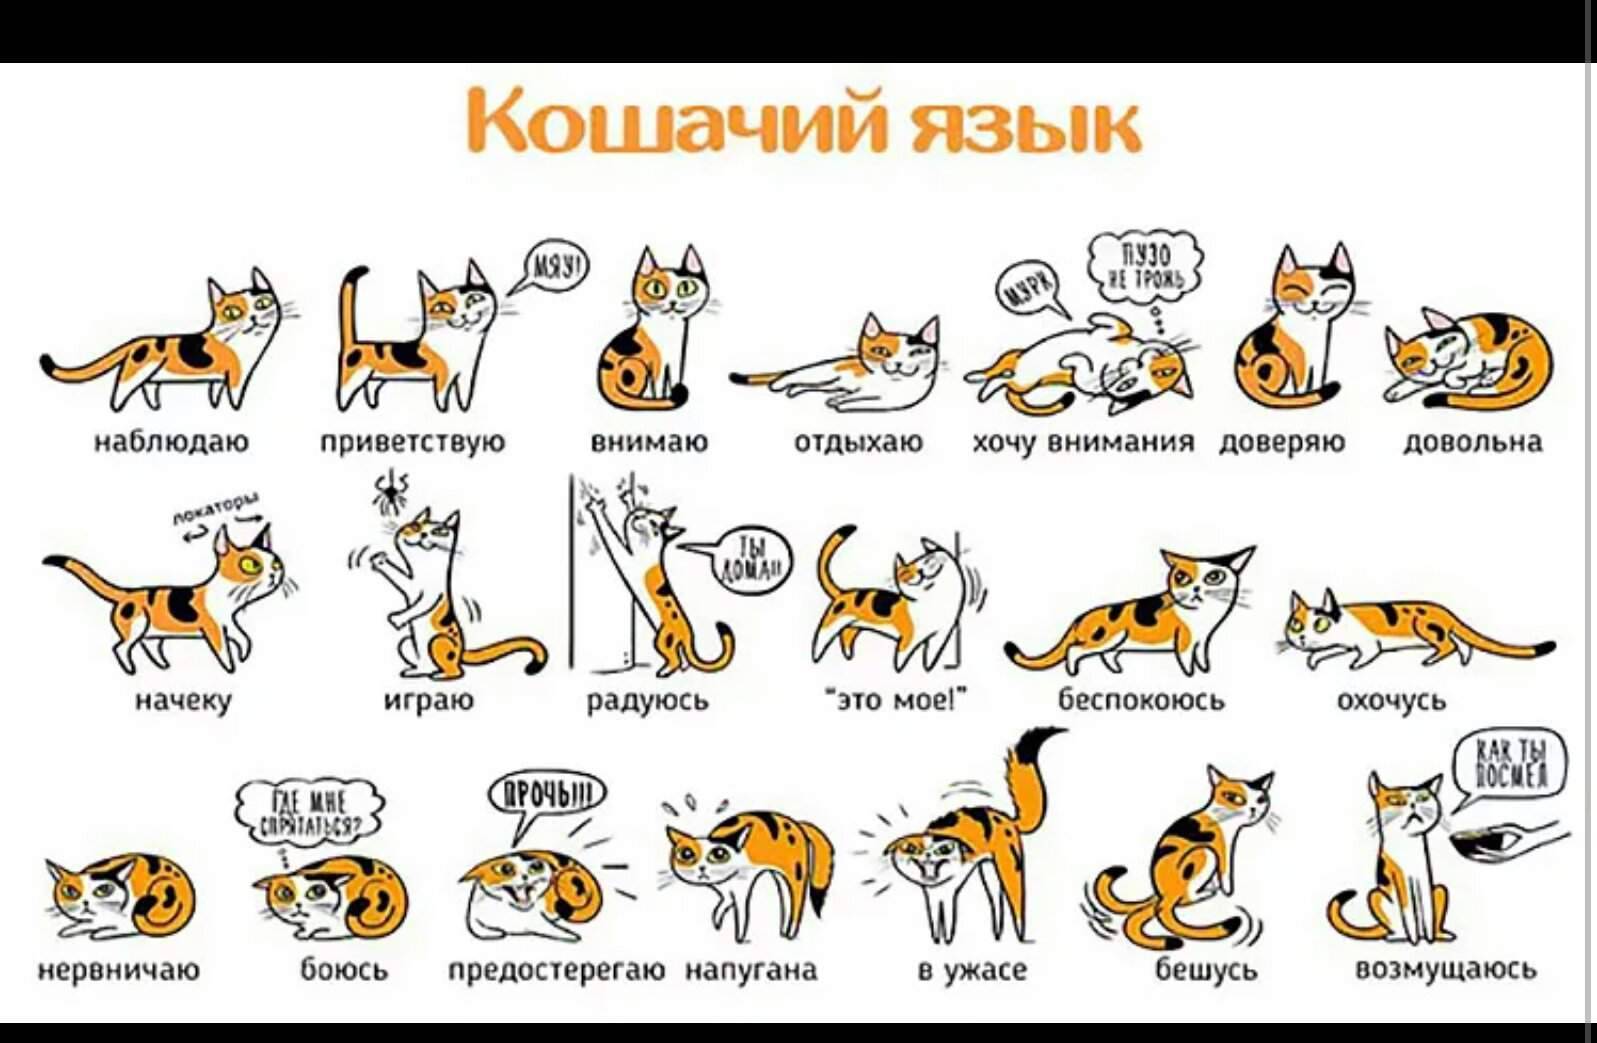 Разговорчивые кошки, что означает настойчивое мяуканье кошки, признак болезни кошки, психология кота кошки говоруна, поведение кошки, реферат почему кошка мяукает? психология кошки